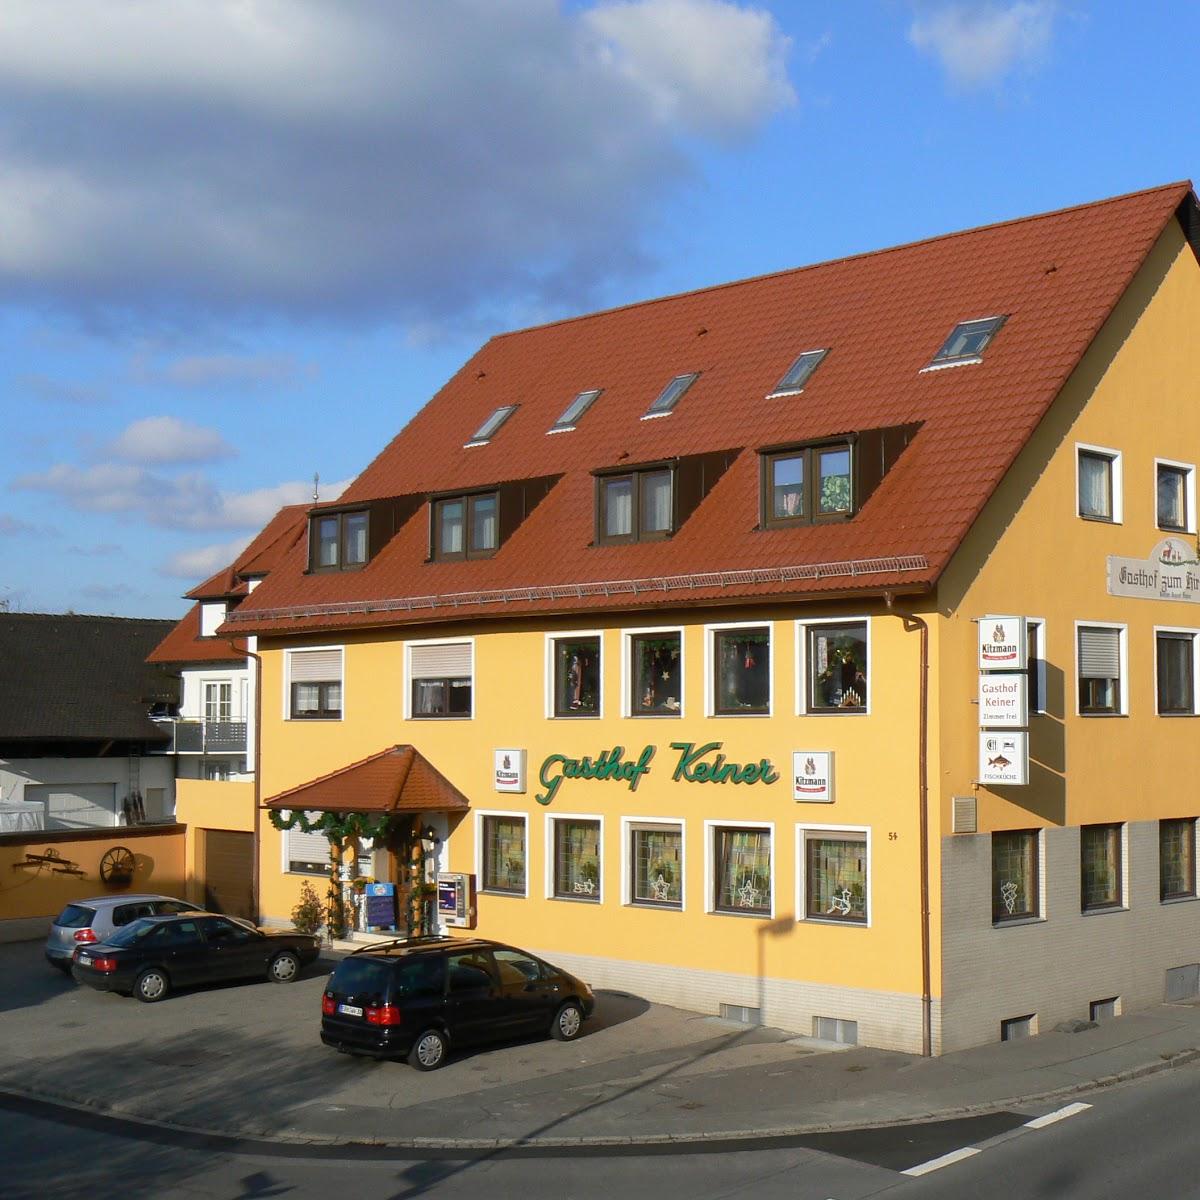 Restaurant "Gästehaus Keiner" in Röttenbach